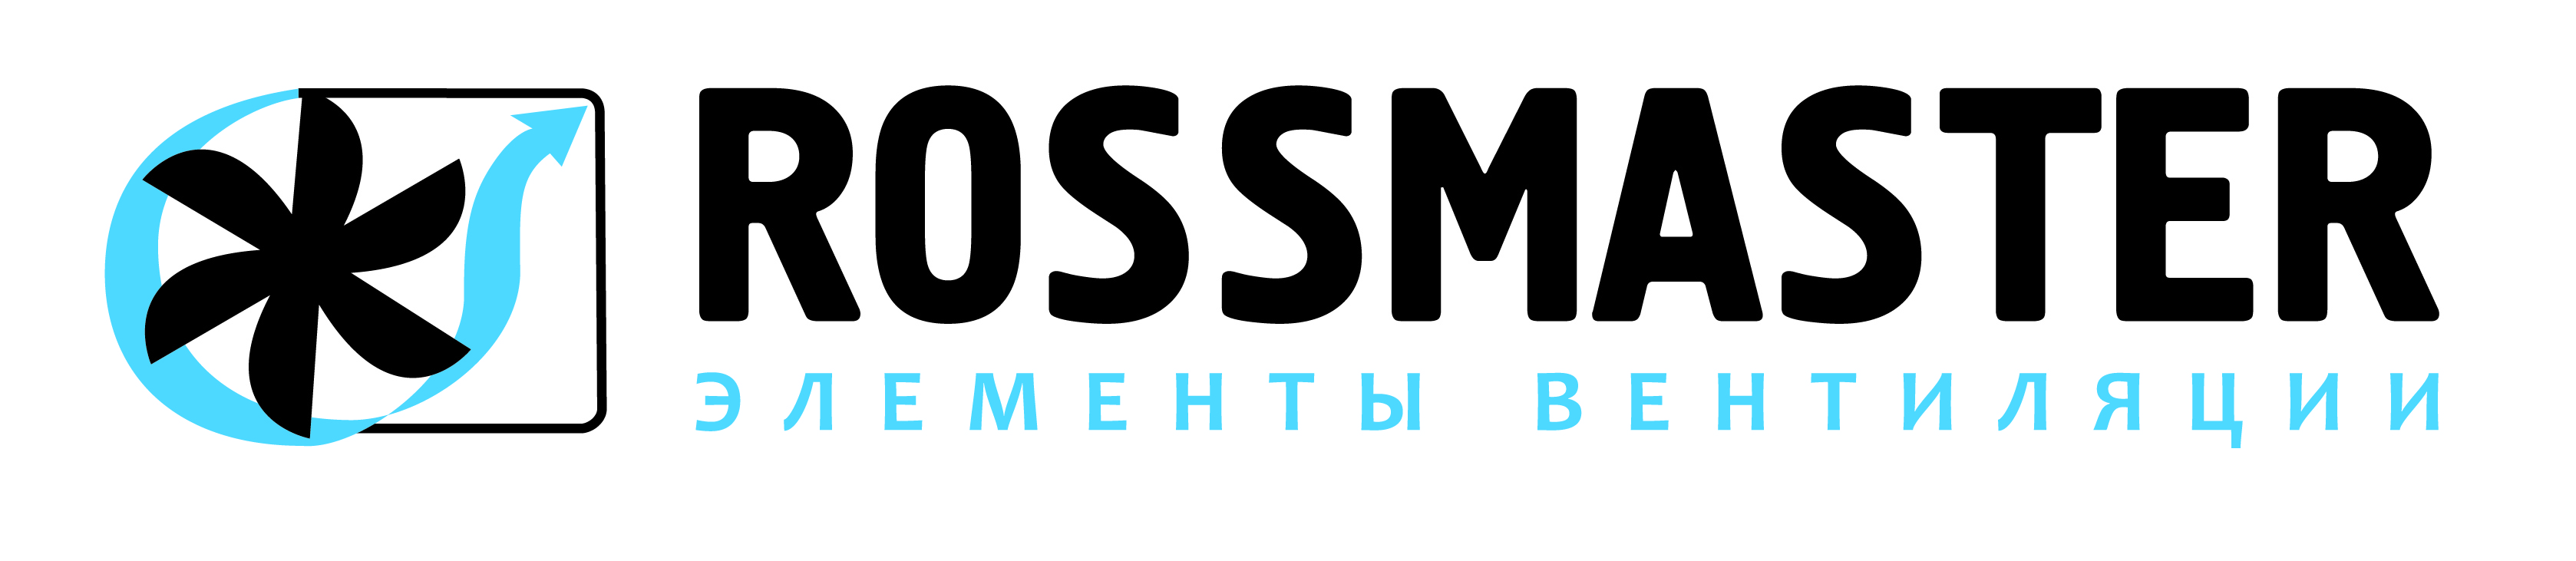 rossmaster logo